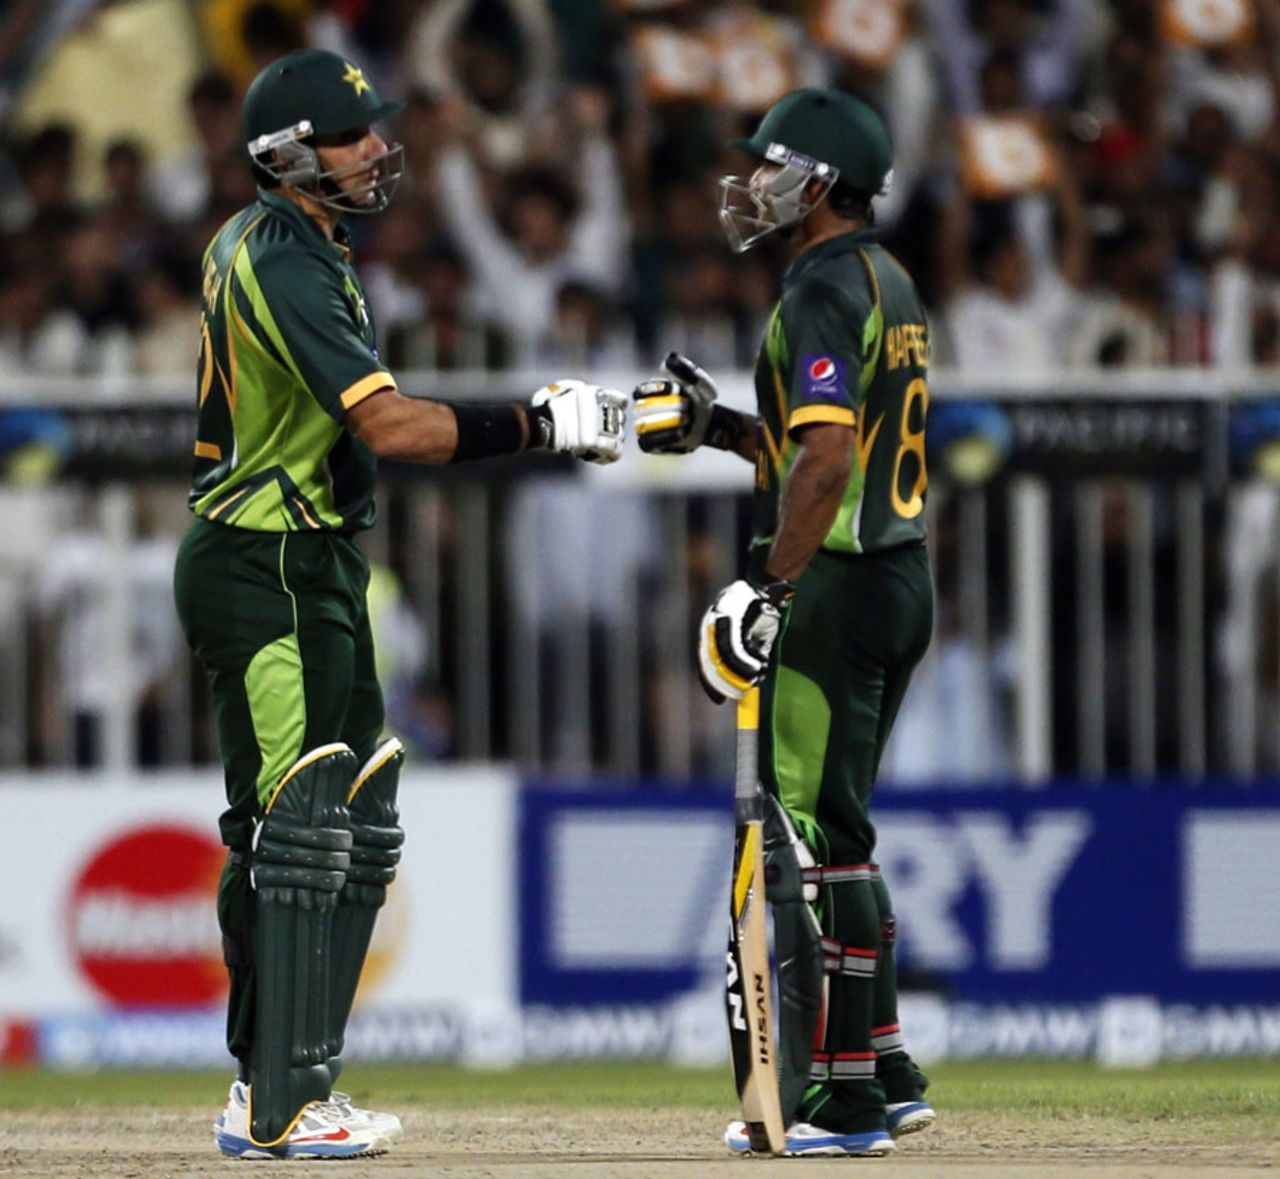 Mohammad Hafeez and Misbah-ul-Haq punch gloves, Pakistan v Sri Lanka, 3rd ODI, Sharjah, December 22, 2013